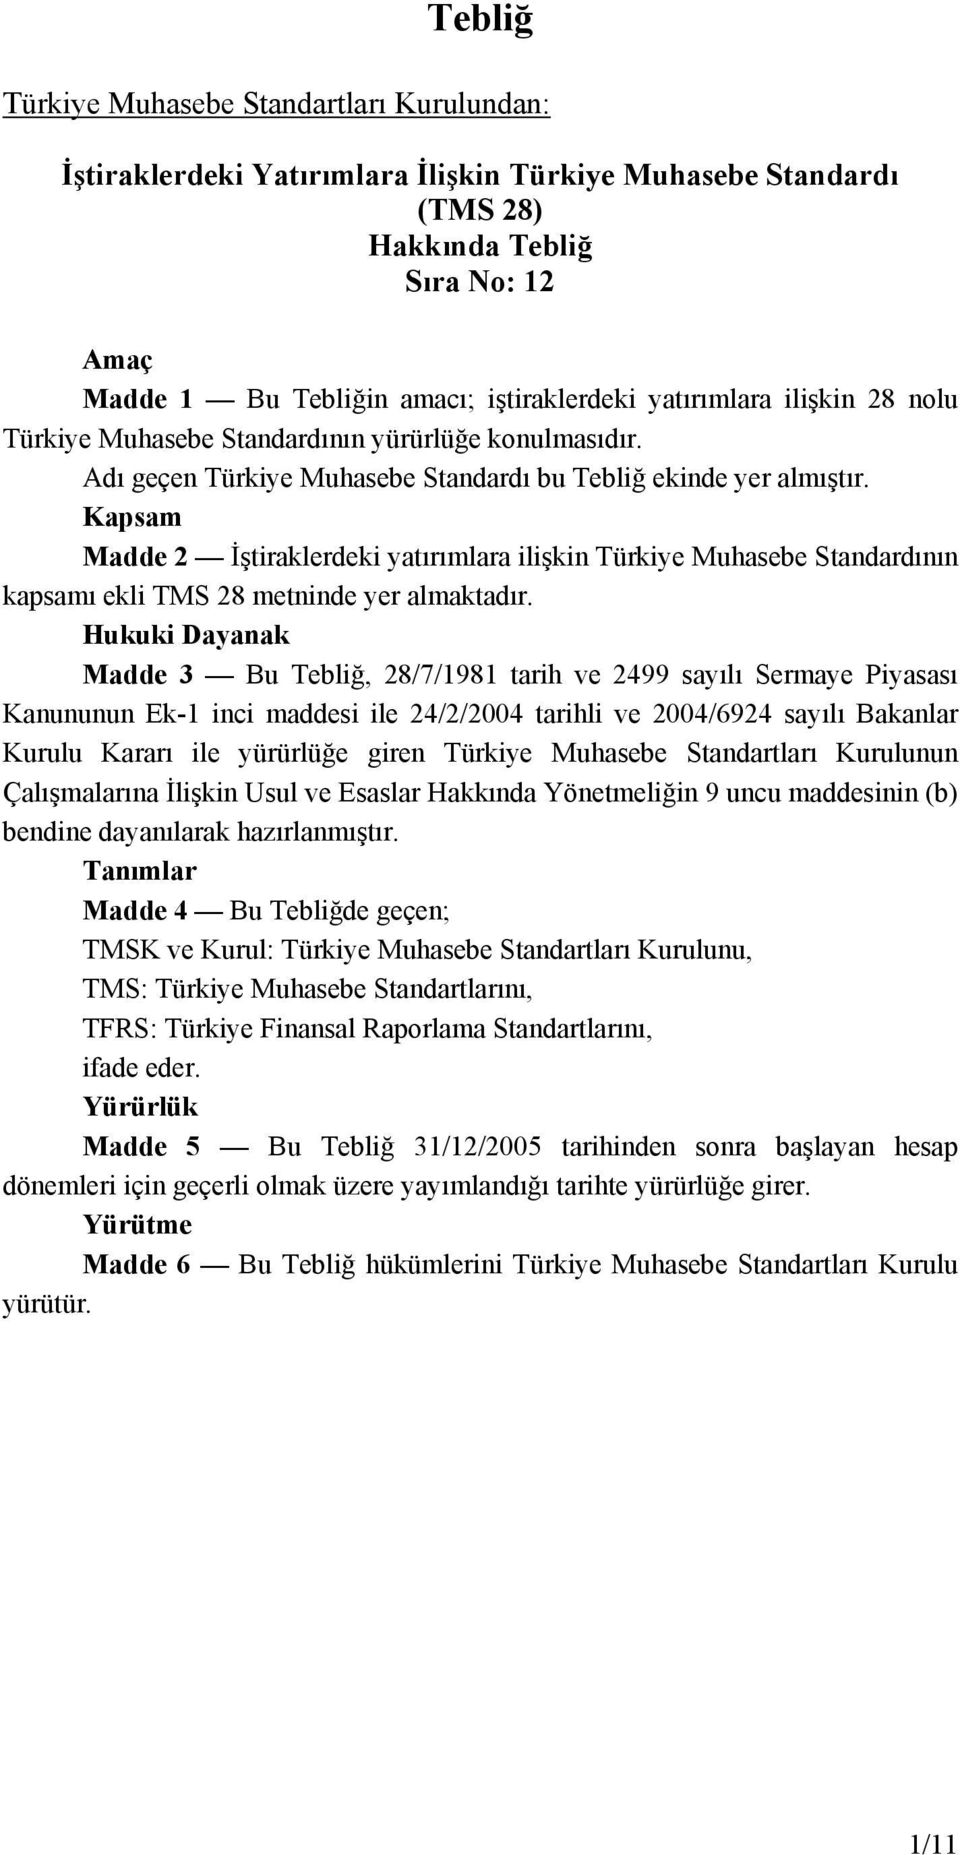 Kapsam Madde 2 İştiraklerdeki yatırımlara ilişkin Türkiye Muhasebe Standardının kapsamı ekli TMS 28 metninde yer almaktadır.